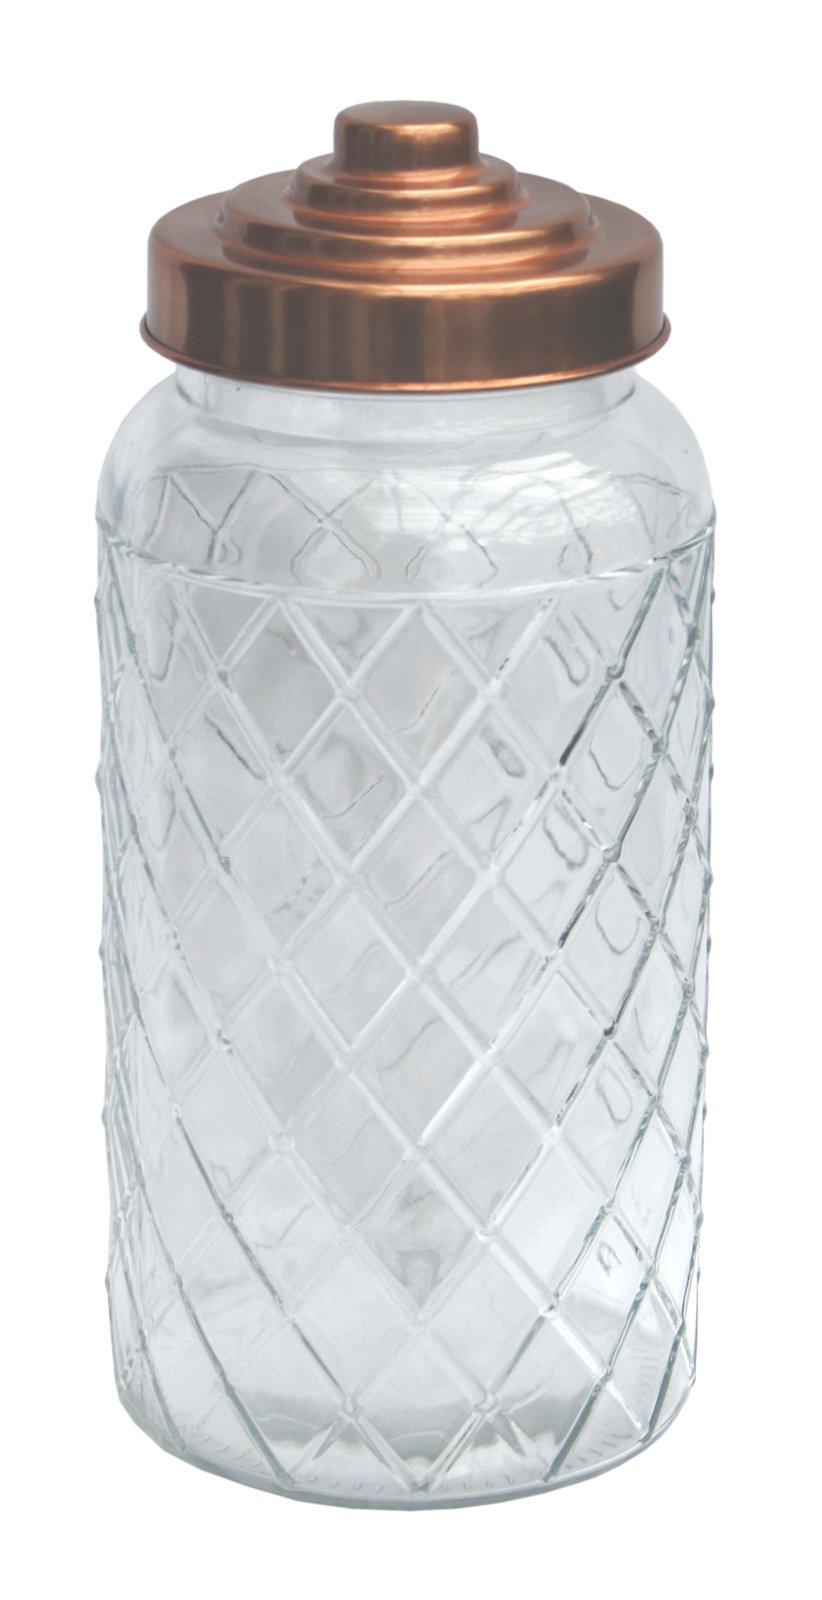 Round Glass Jar With Copper Lid - 9.5 Inch - £16.99 - Kitchen Storage 